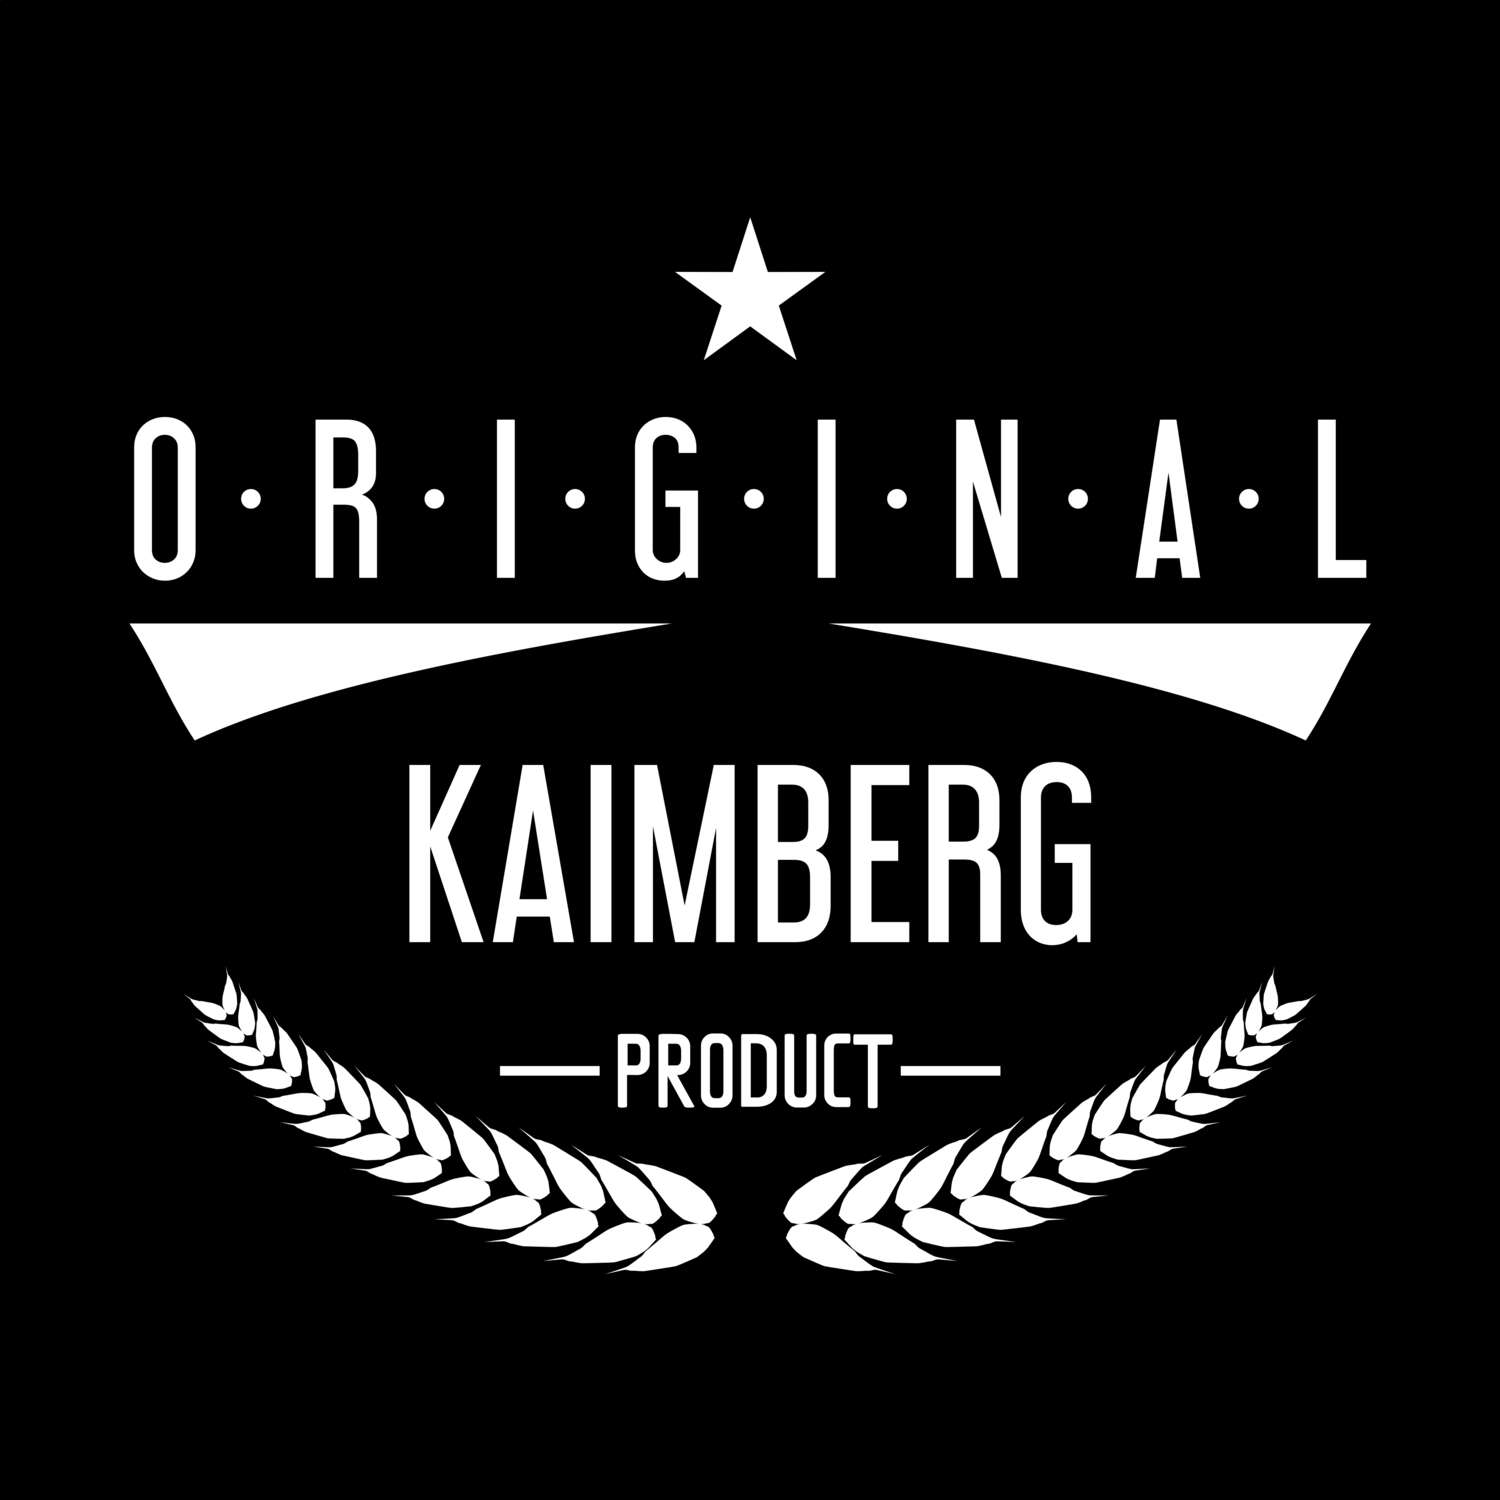 Kaimberg T-Shirt »Original Product«